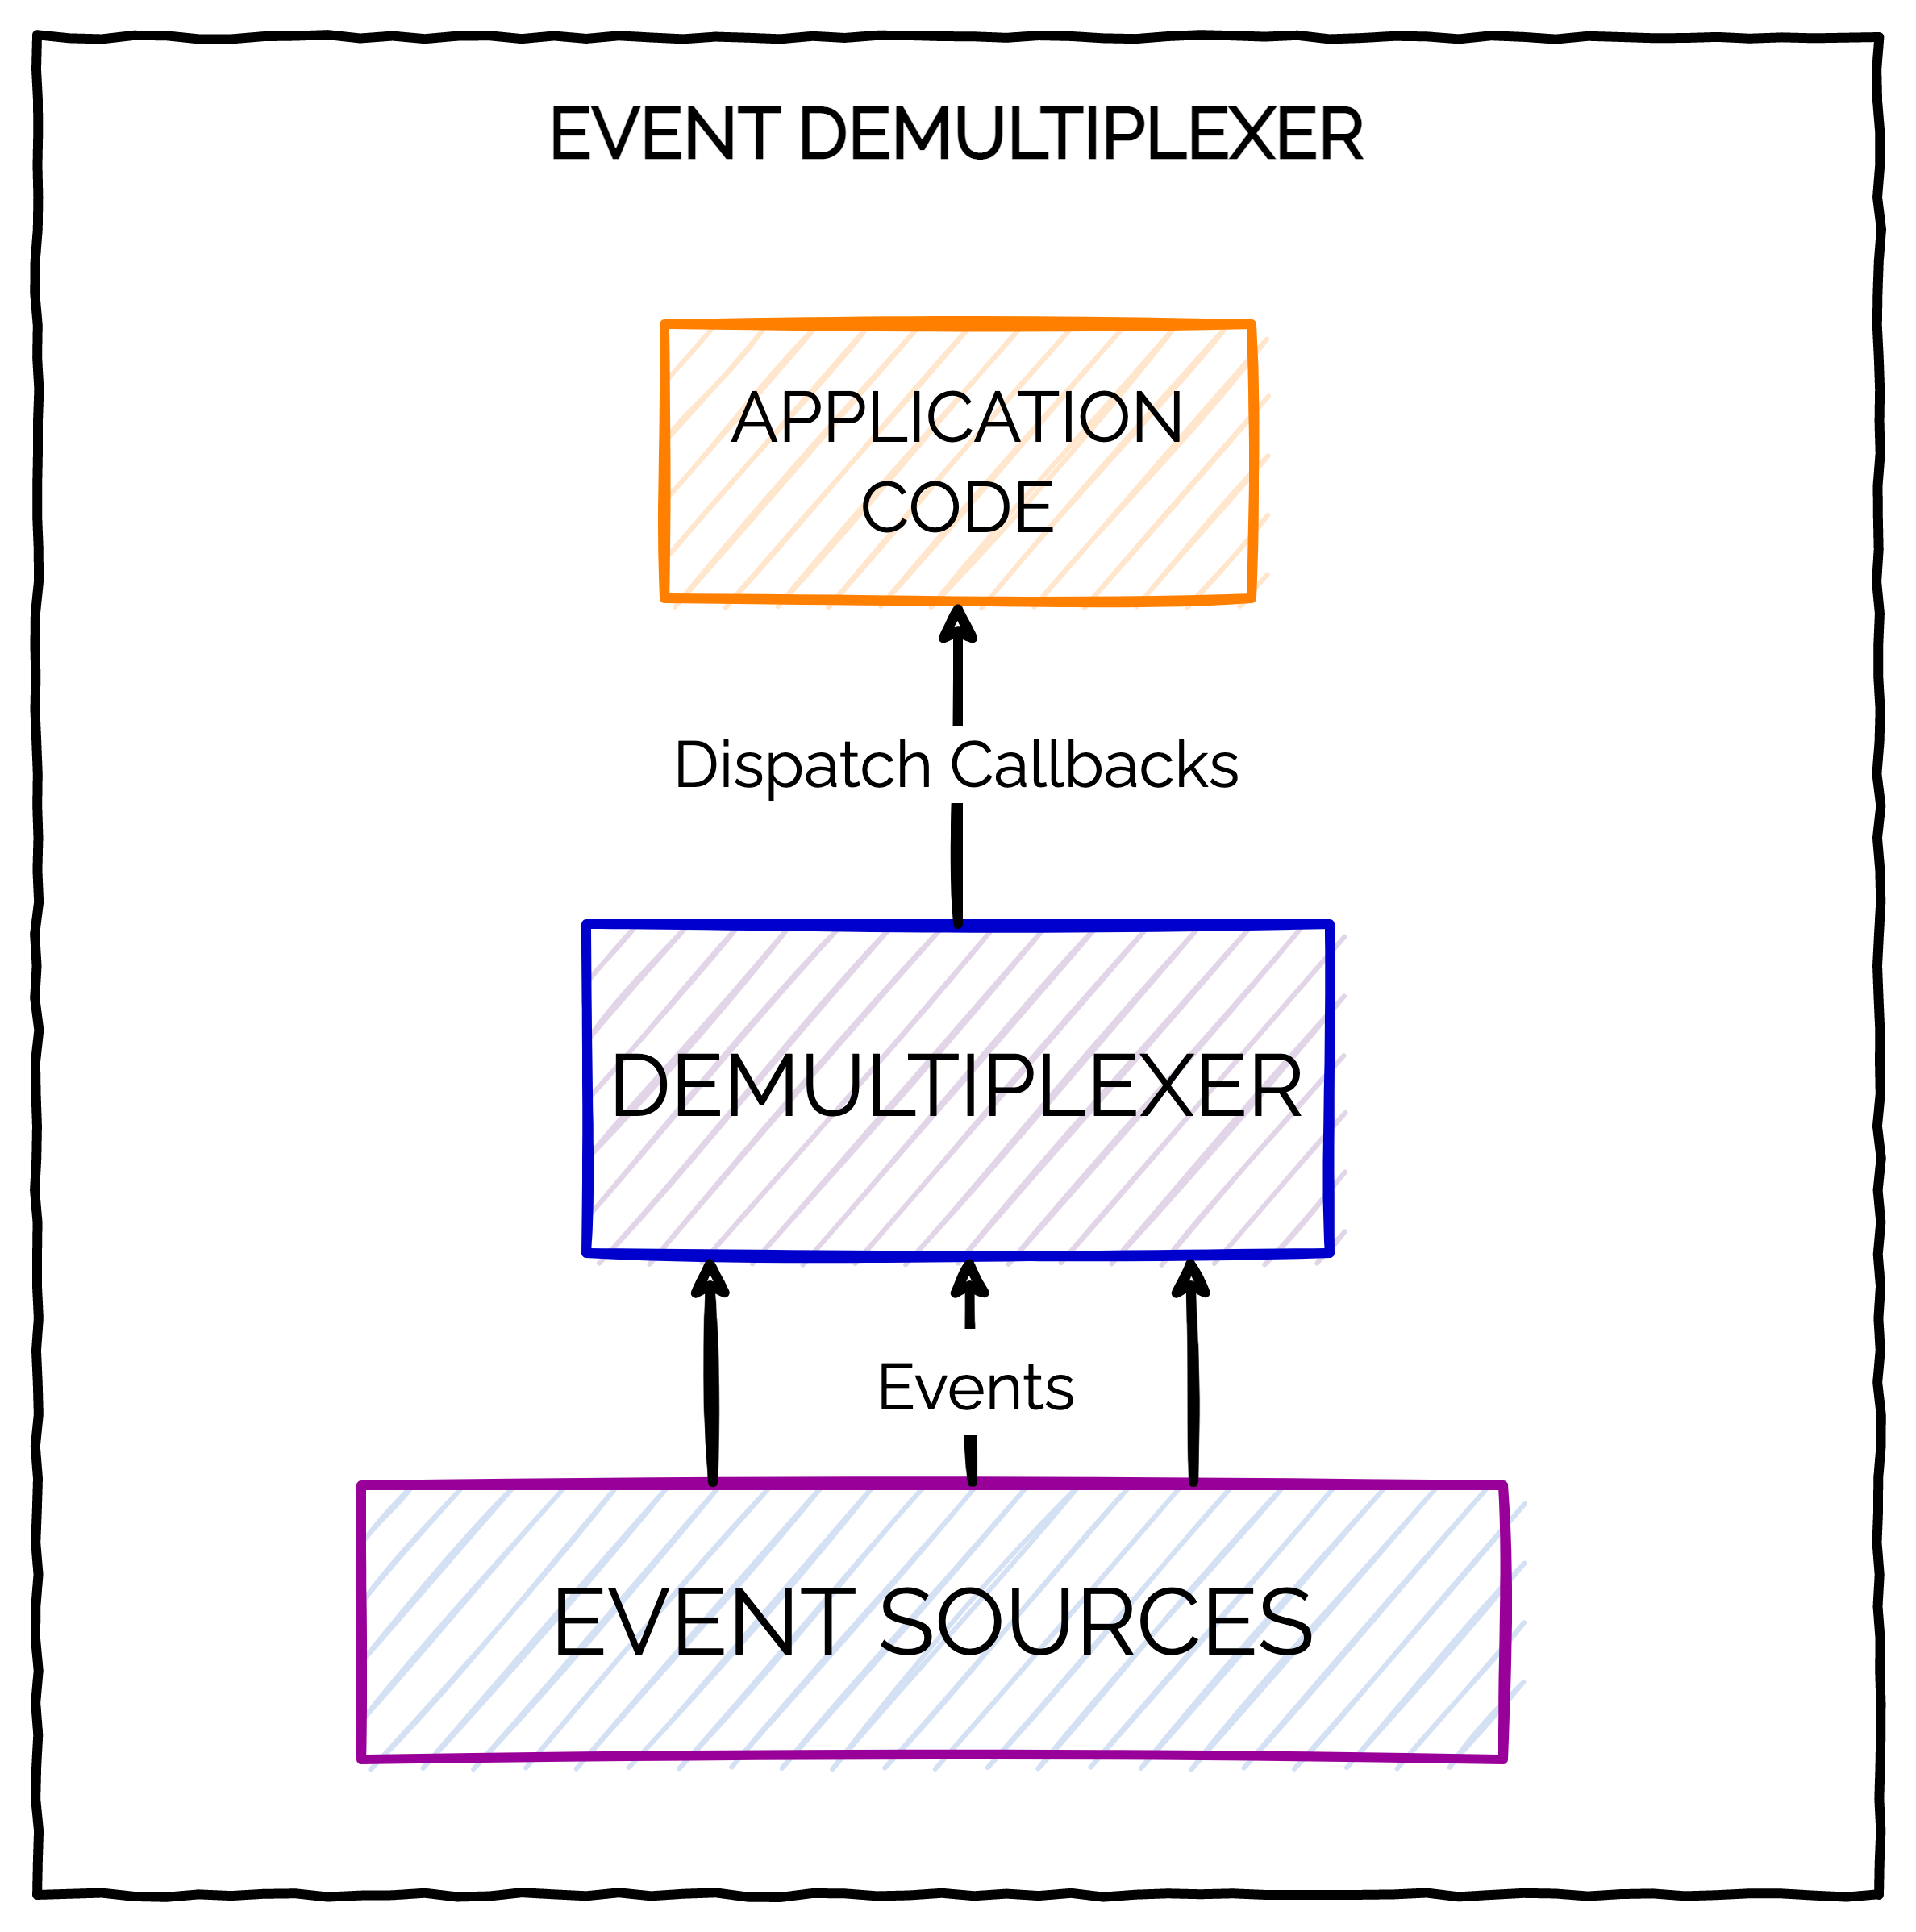 How does an Event Demultiplexer Work